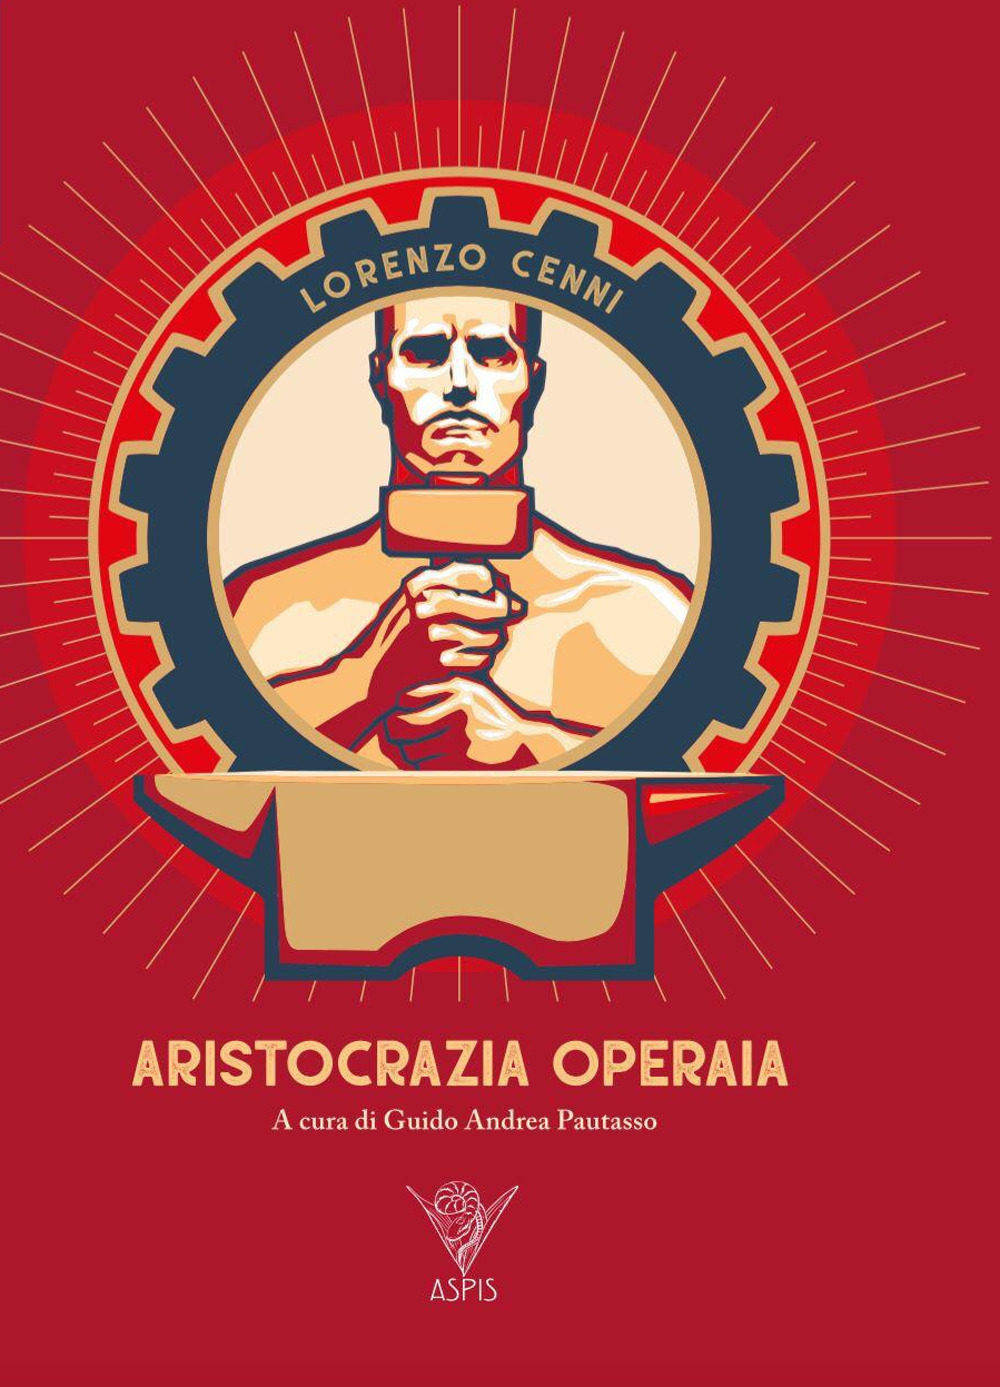 Libri Cenni Lorenzo - Aristocrazia Operaia NUOVO SIGILLATO, EDIZIONE DEL 27/11/2019 SUBITO DISPONIBILE